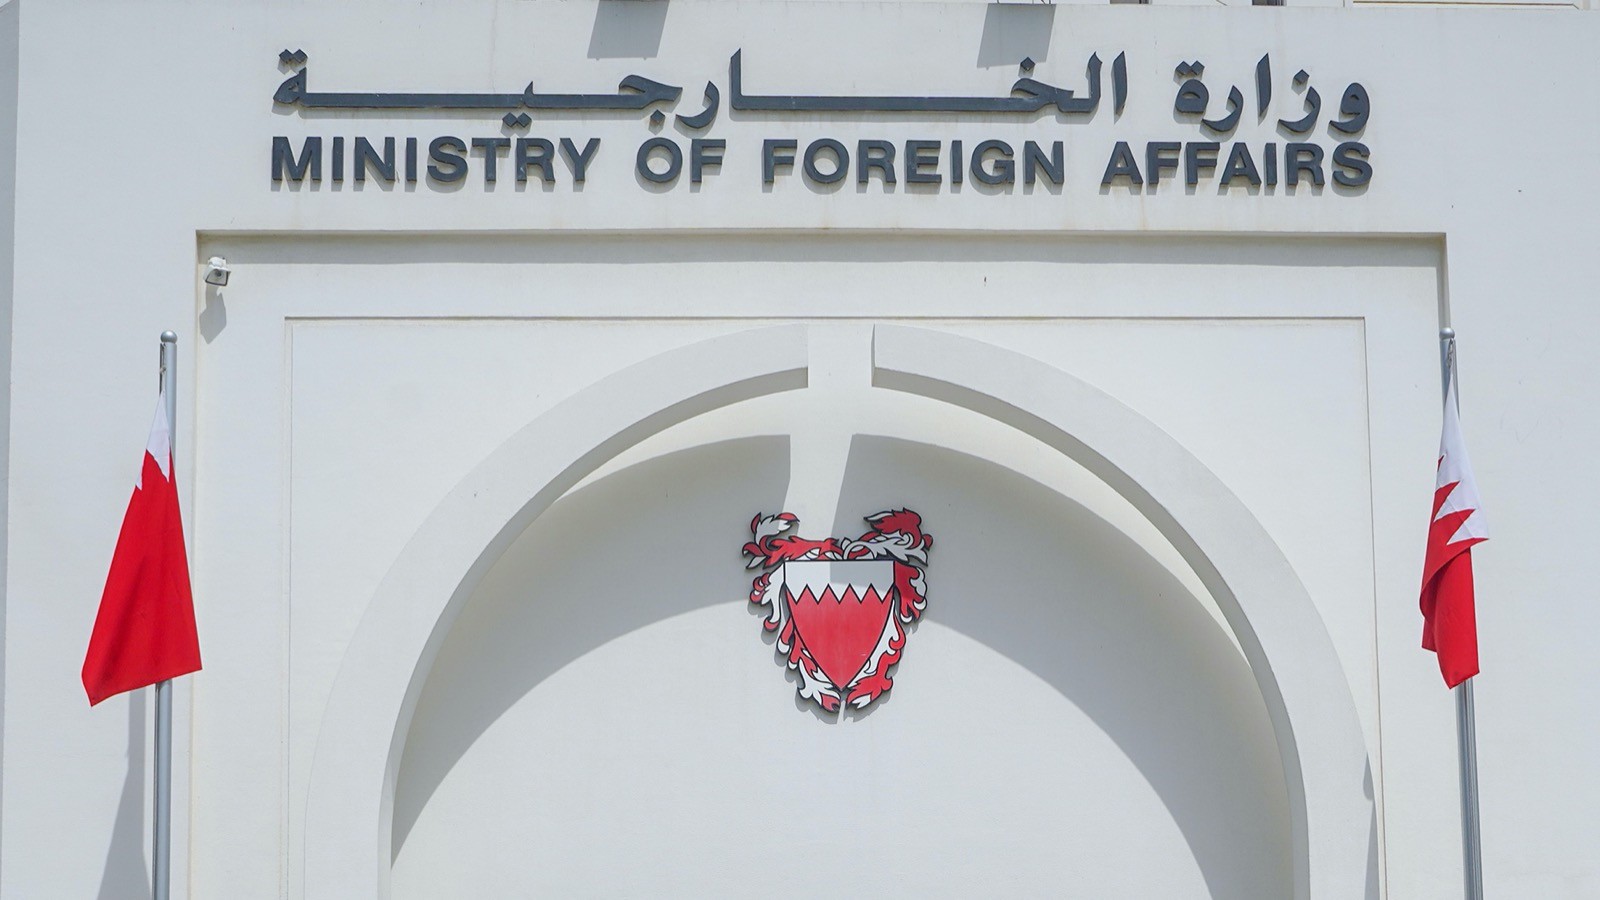 وزارة الخارجية البحرينية أكدت التزامها بمبادئ حسن الجوار وعدم التدخل في الشؤون الداخلية للدول الأخرى